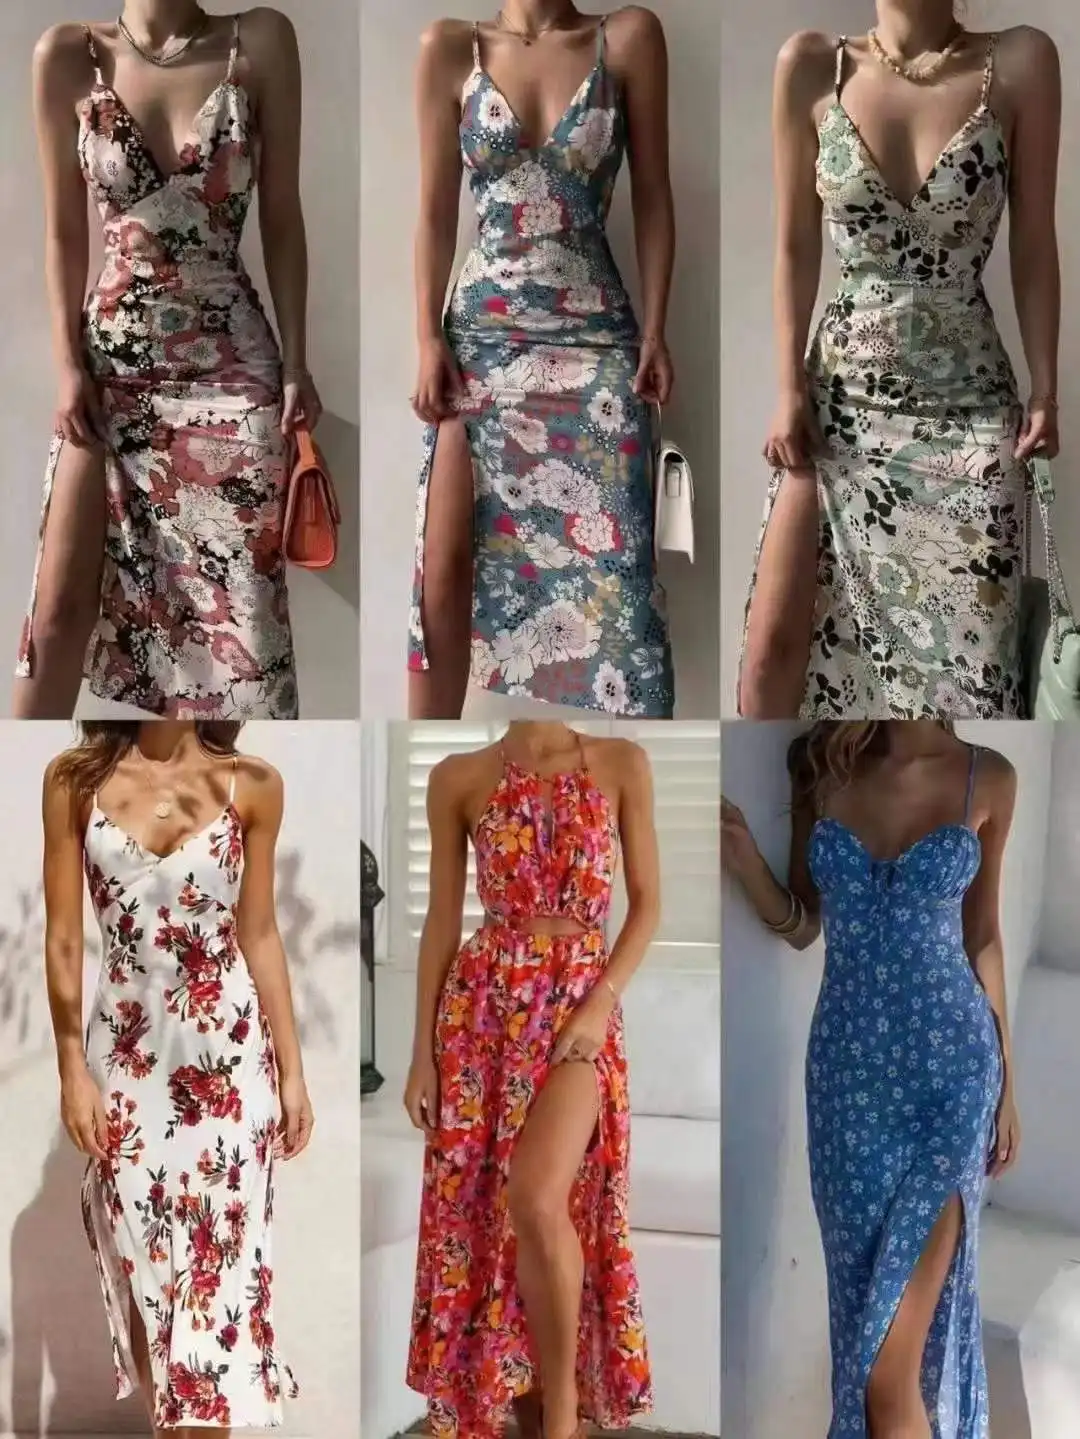 Atacado mais barato vendedores roupas a granel crop top fabricante blusas curva robe mulheres vestido usado vestido